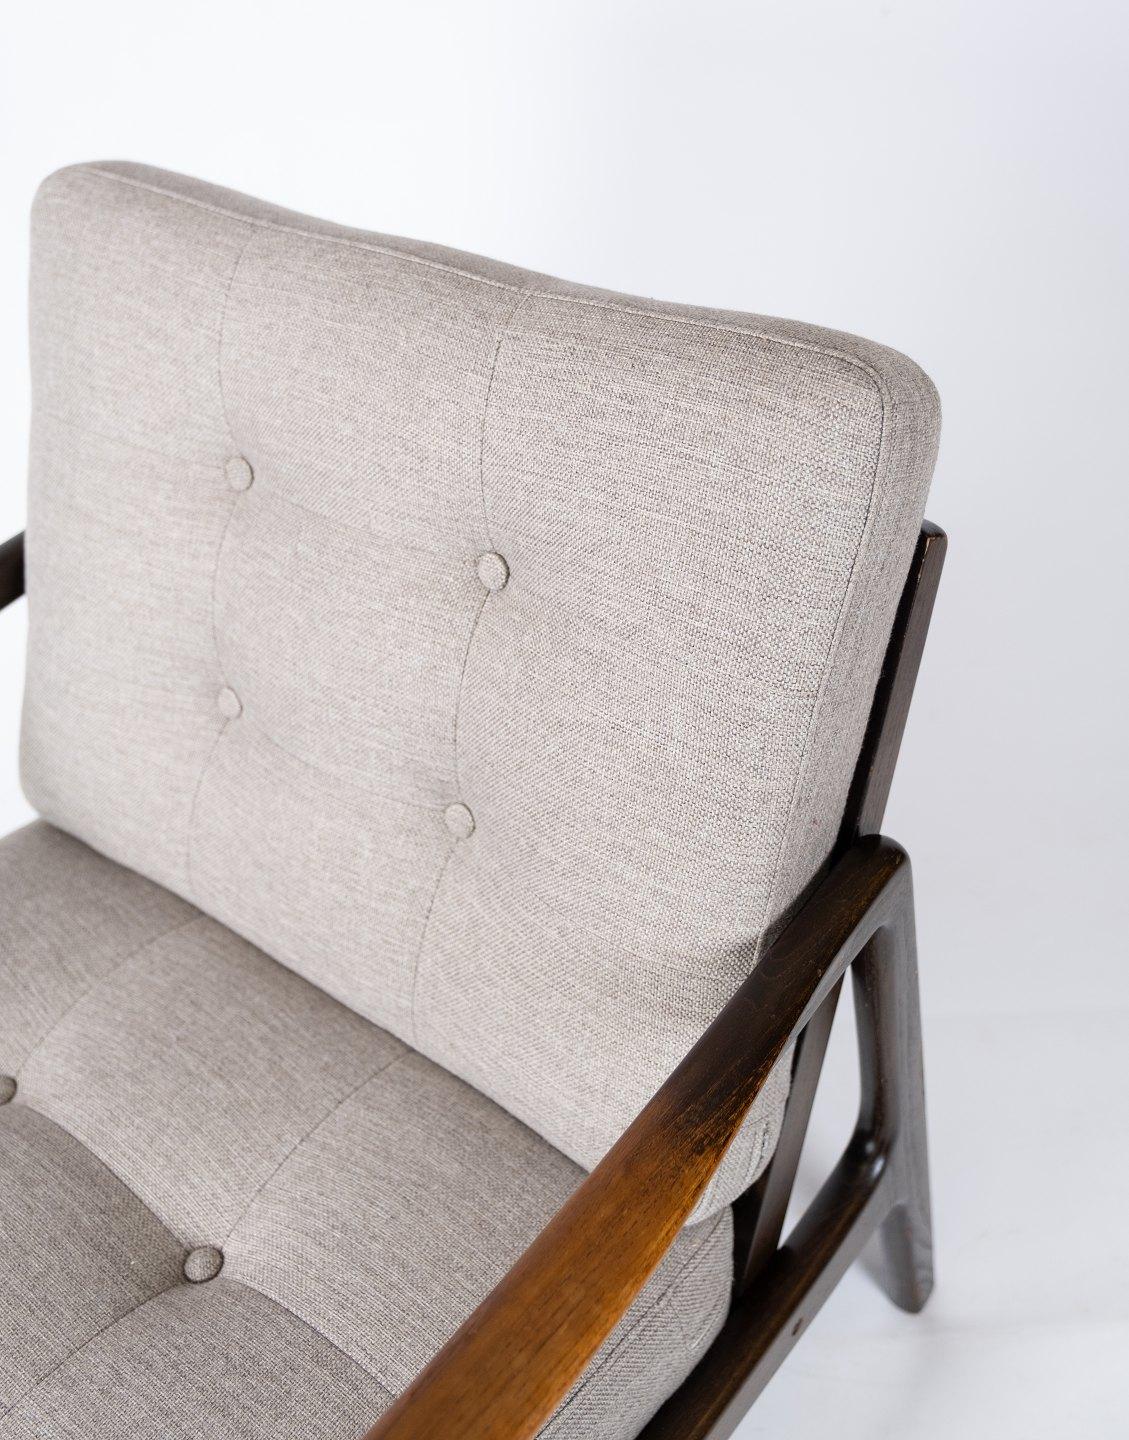 
Cet élégant fauteuil, fabriqué en teck et recouvert d'une laine grise douce, est un exemple remarquable du design scandinave du milieu du siècle dernier. Conçue par le célèbre designer danois Kai Kristiansen dans les années 1960, cette chaise